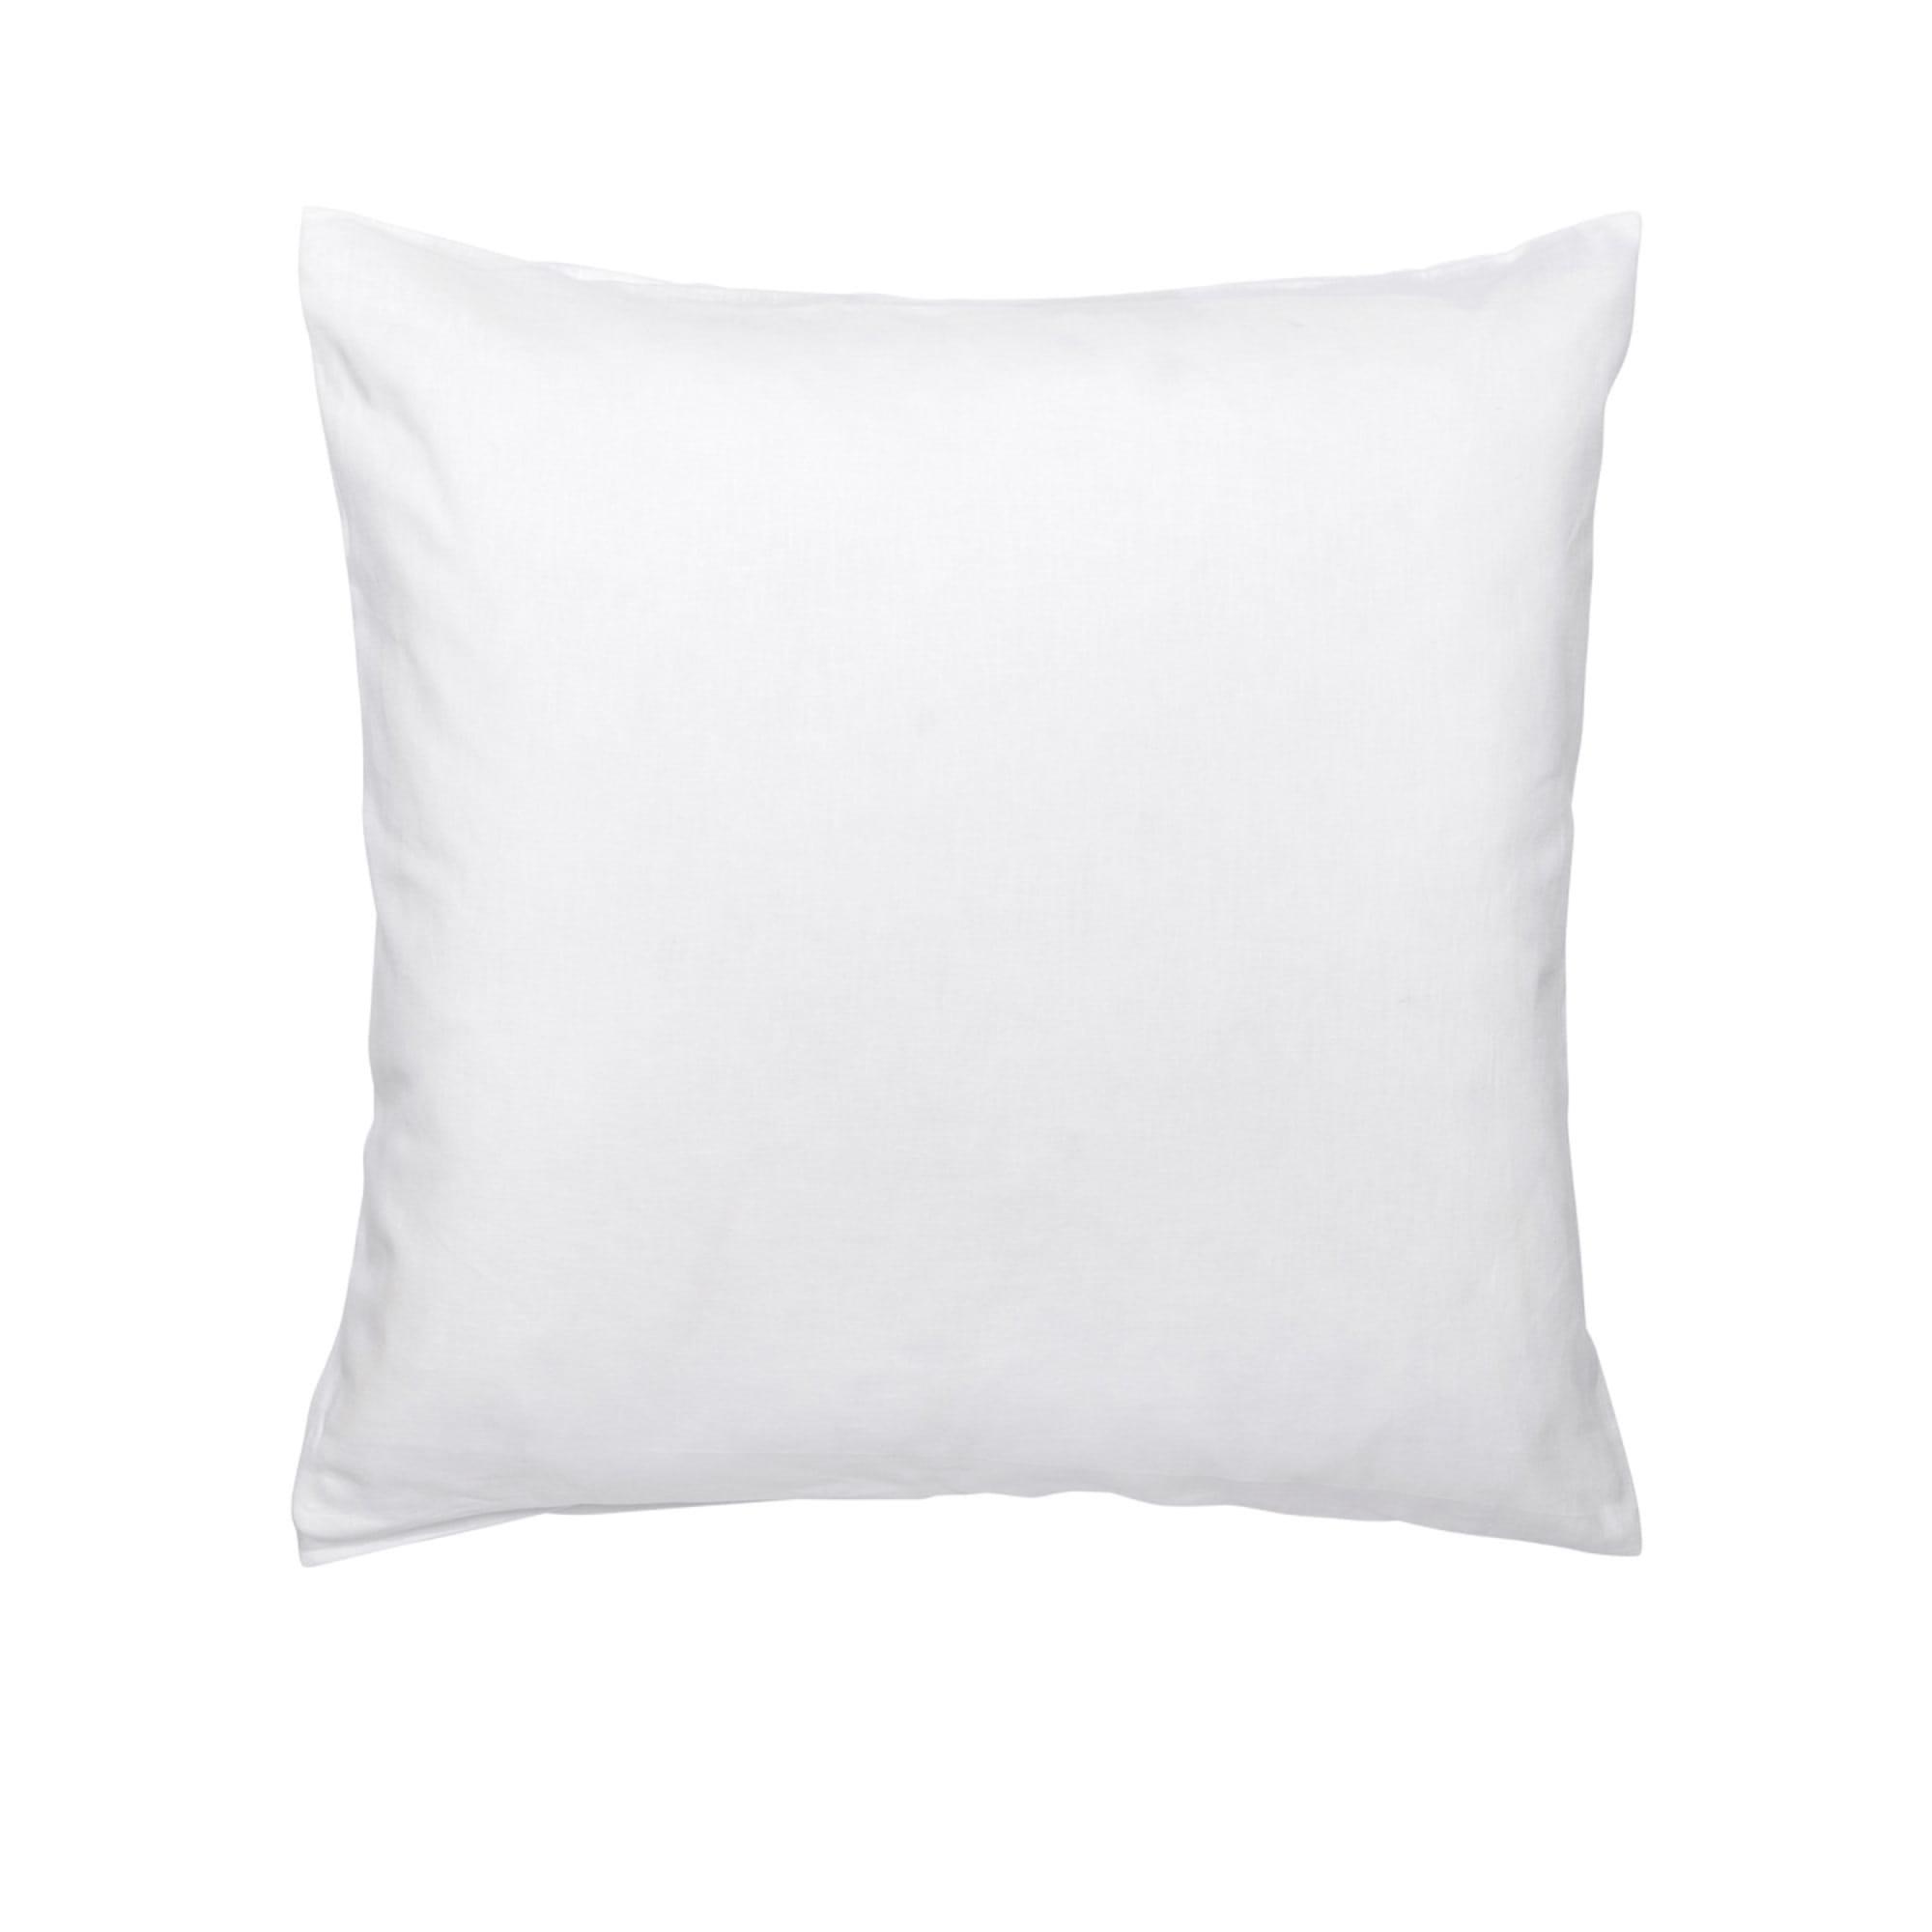 Ecology Dream Euro Pillowcase White Image 1